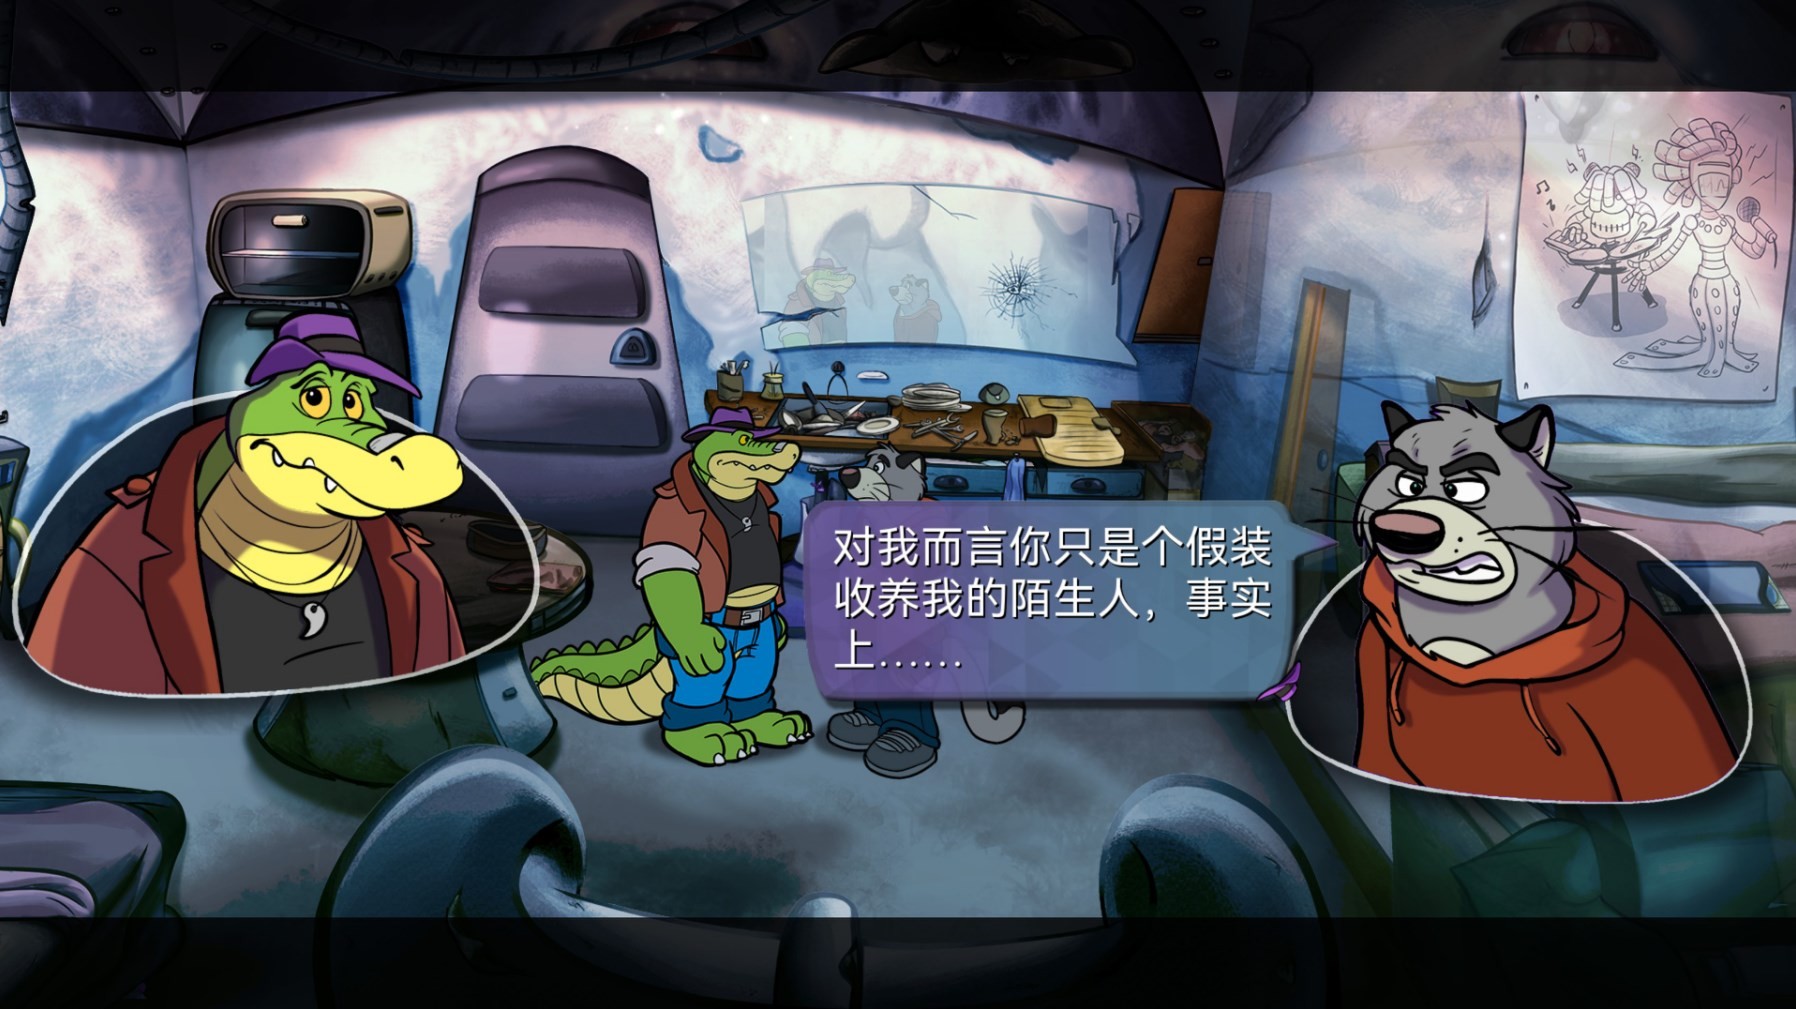 《鱷魚偵探布羅格》背景故事及玩法解析 鱷魚偵探布羅格好玩嗎